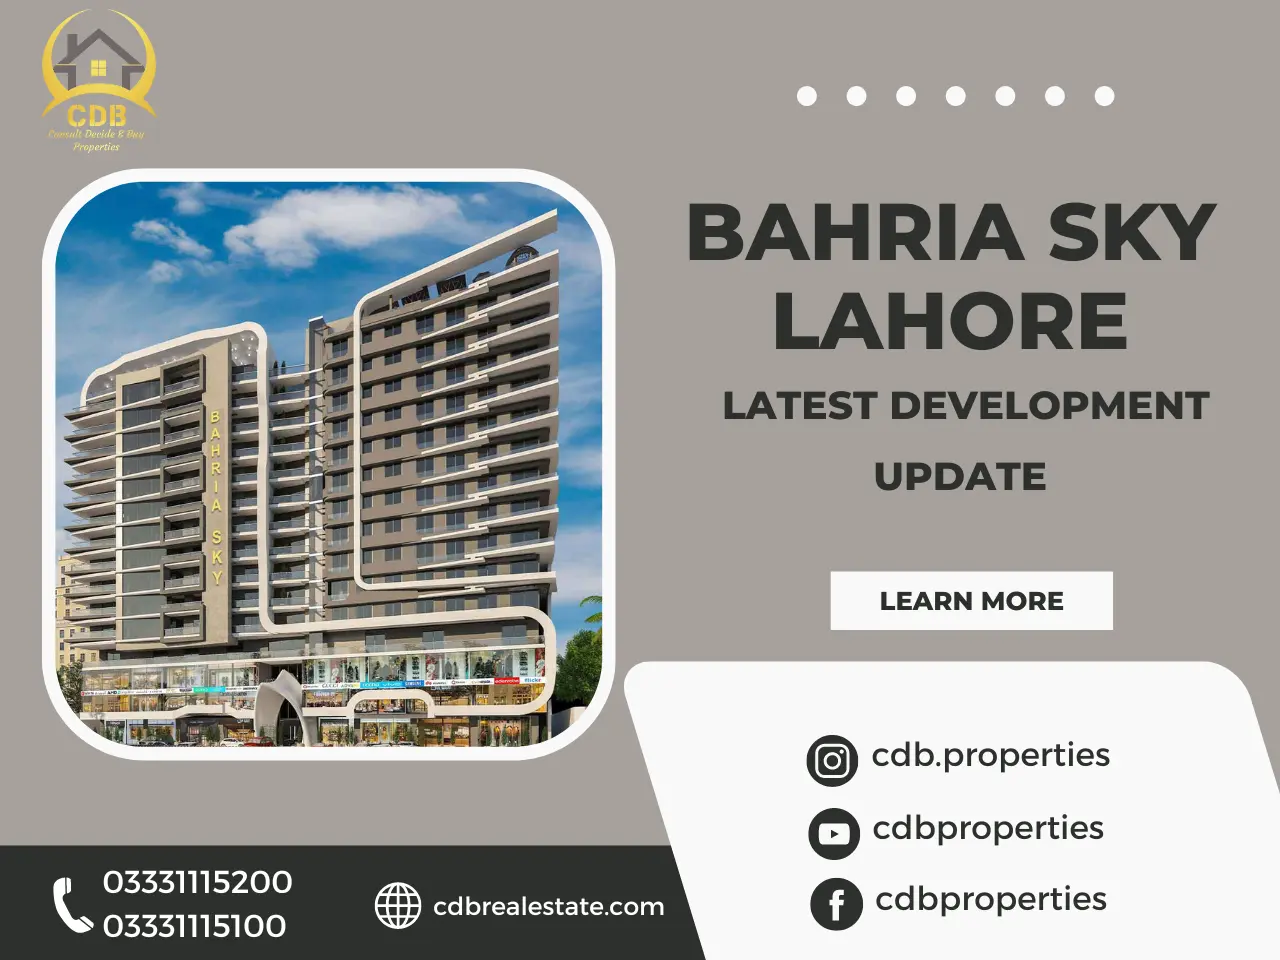 Bahria Sky Lahore Development